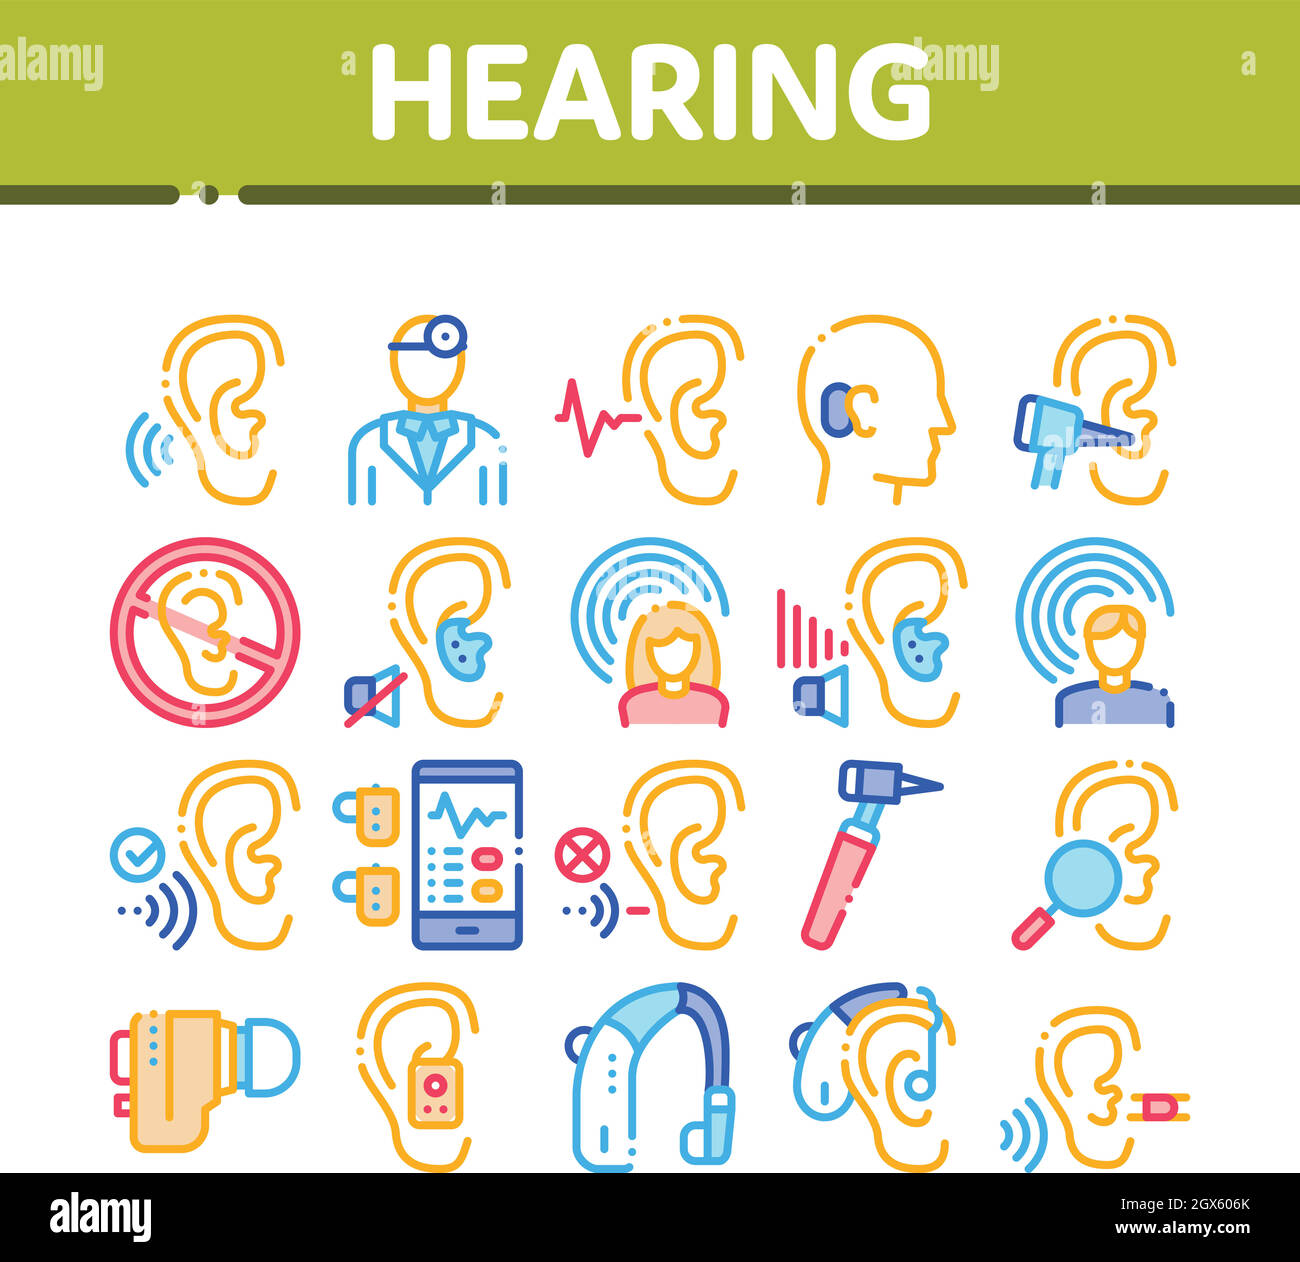 Hearing Human Sense Collection Icons Set Vector Stock Vector